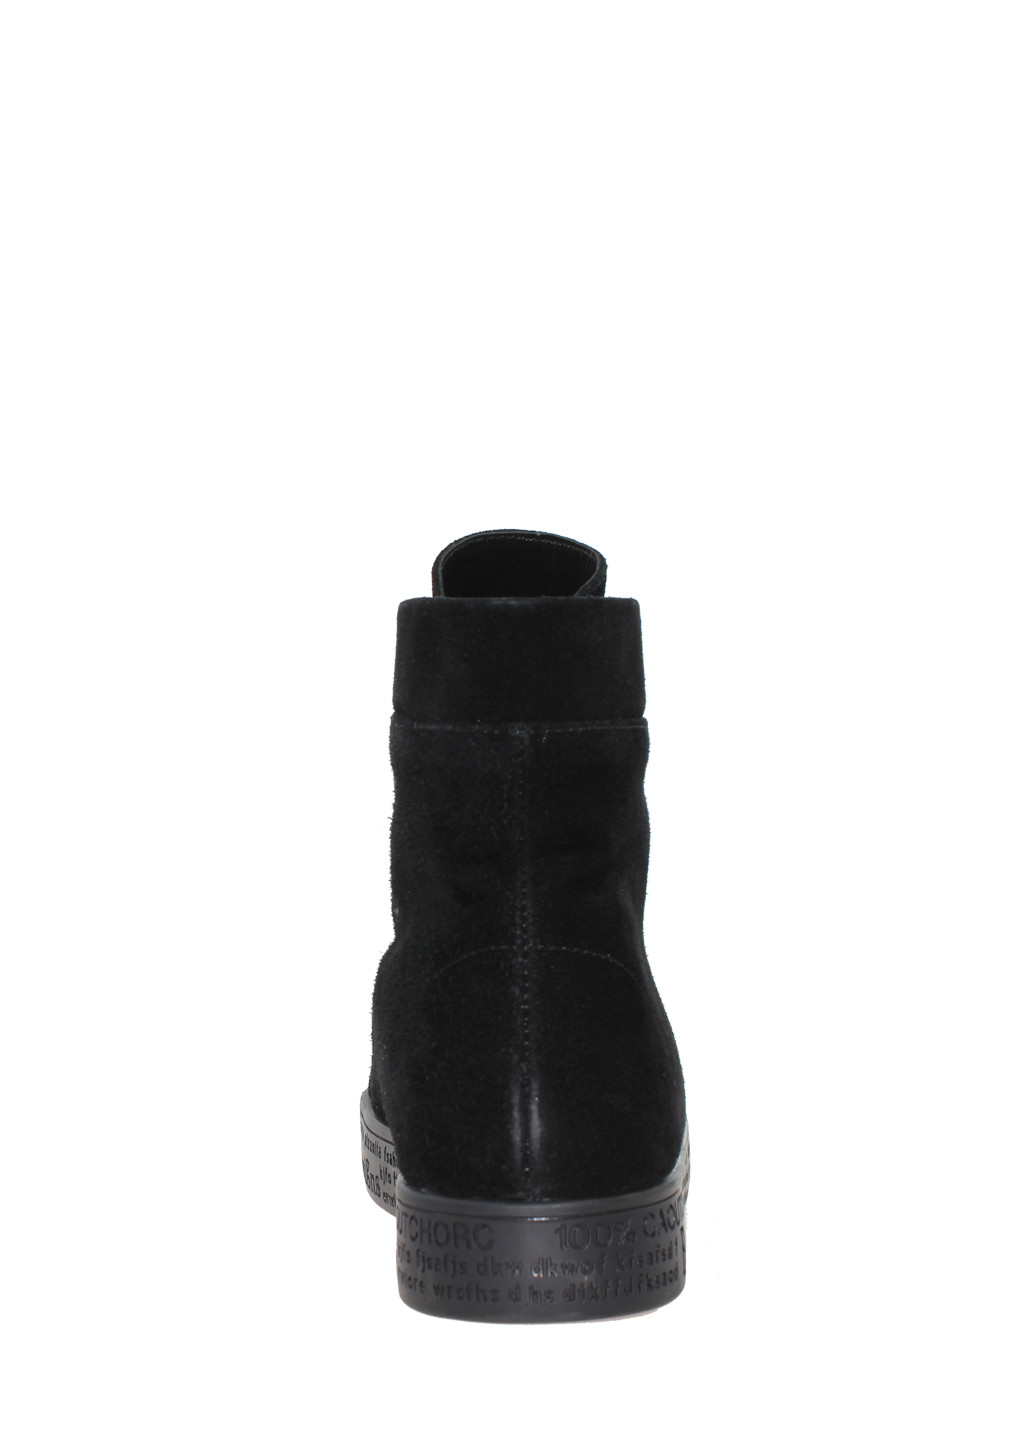 Зимние ботинки biz19-65854 черный Bizoni из натуральной замши